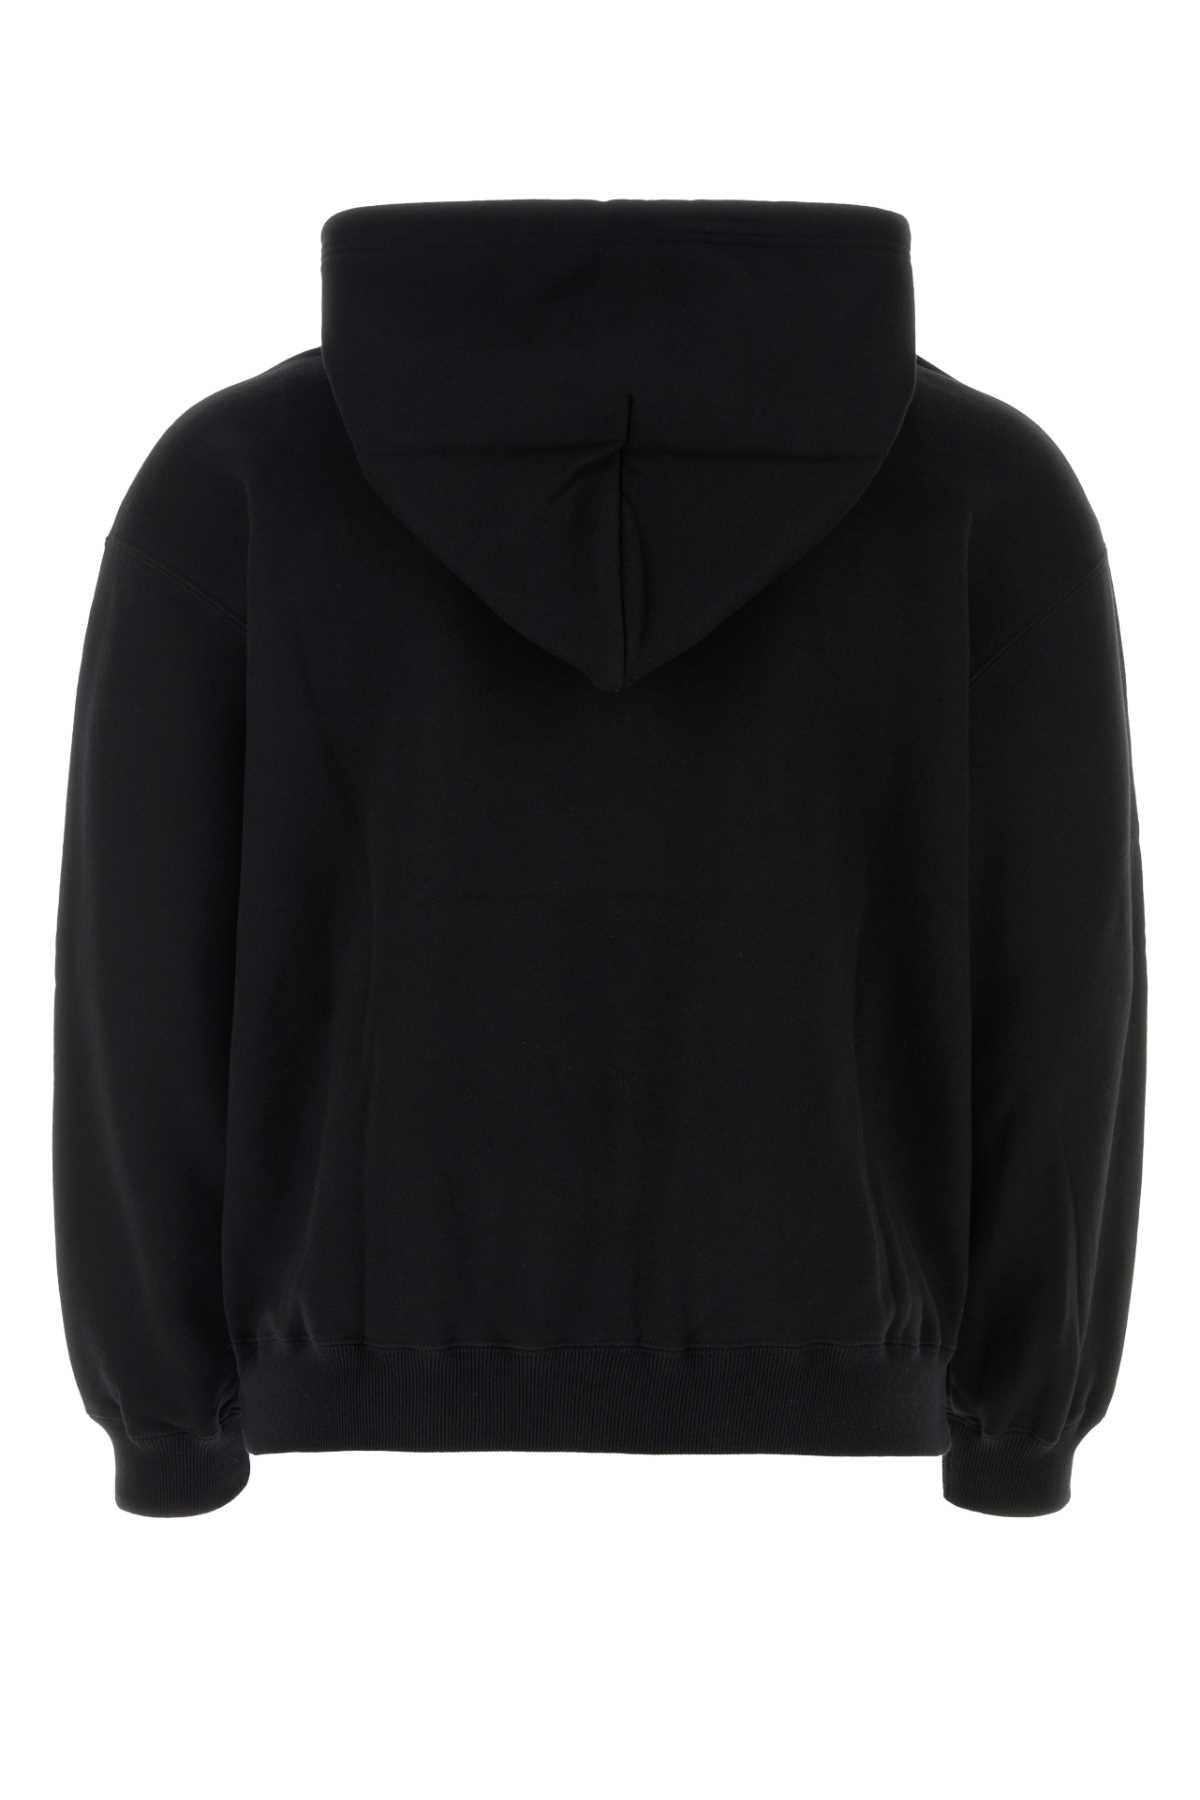 Yohji Yamamoto Black Cotton  X Neighborhood Sweatshirt